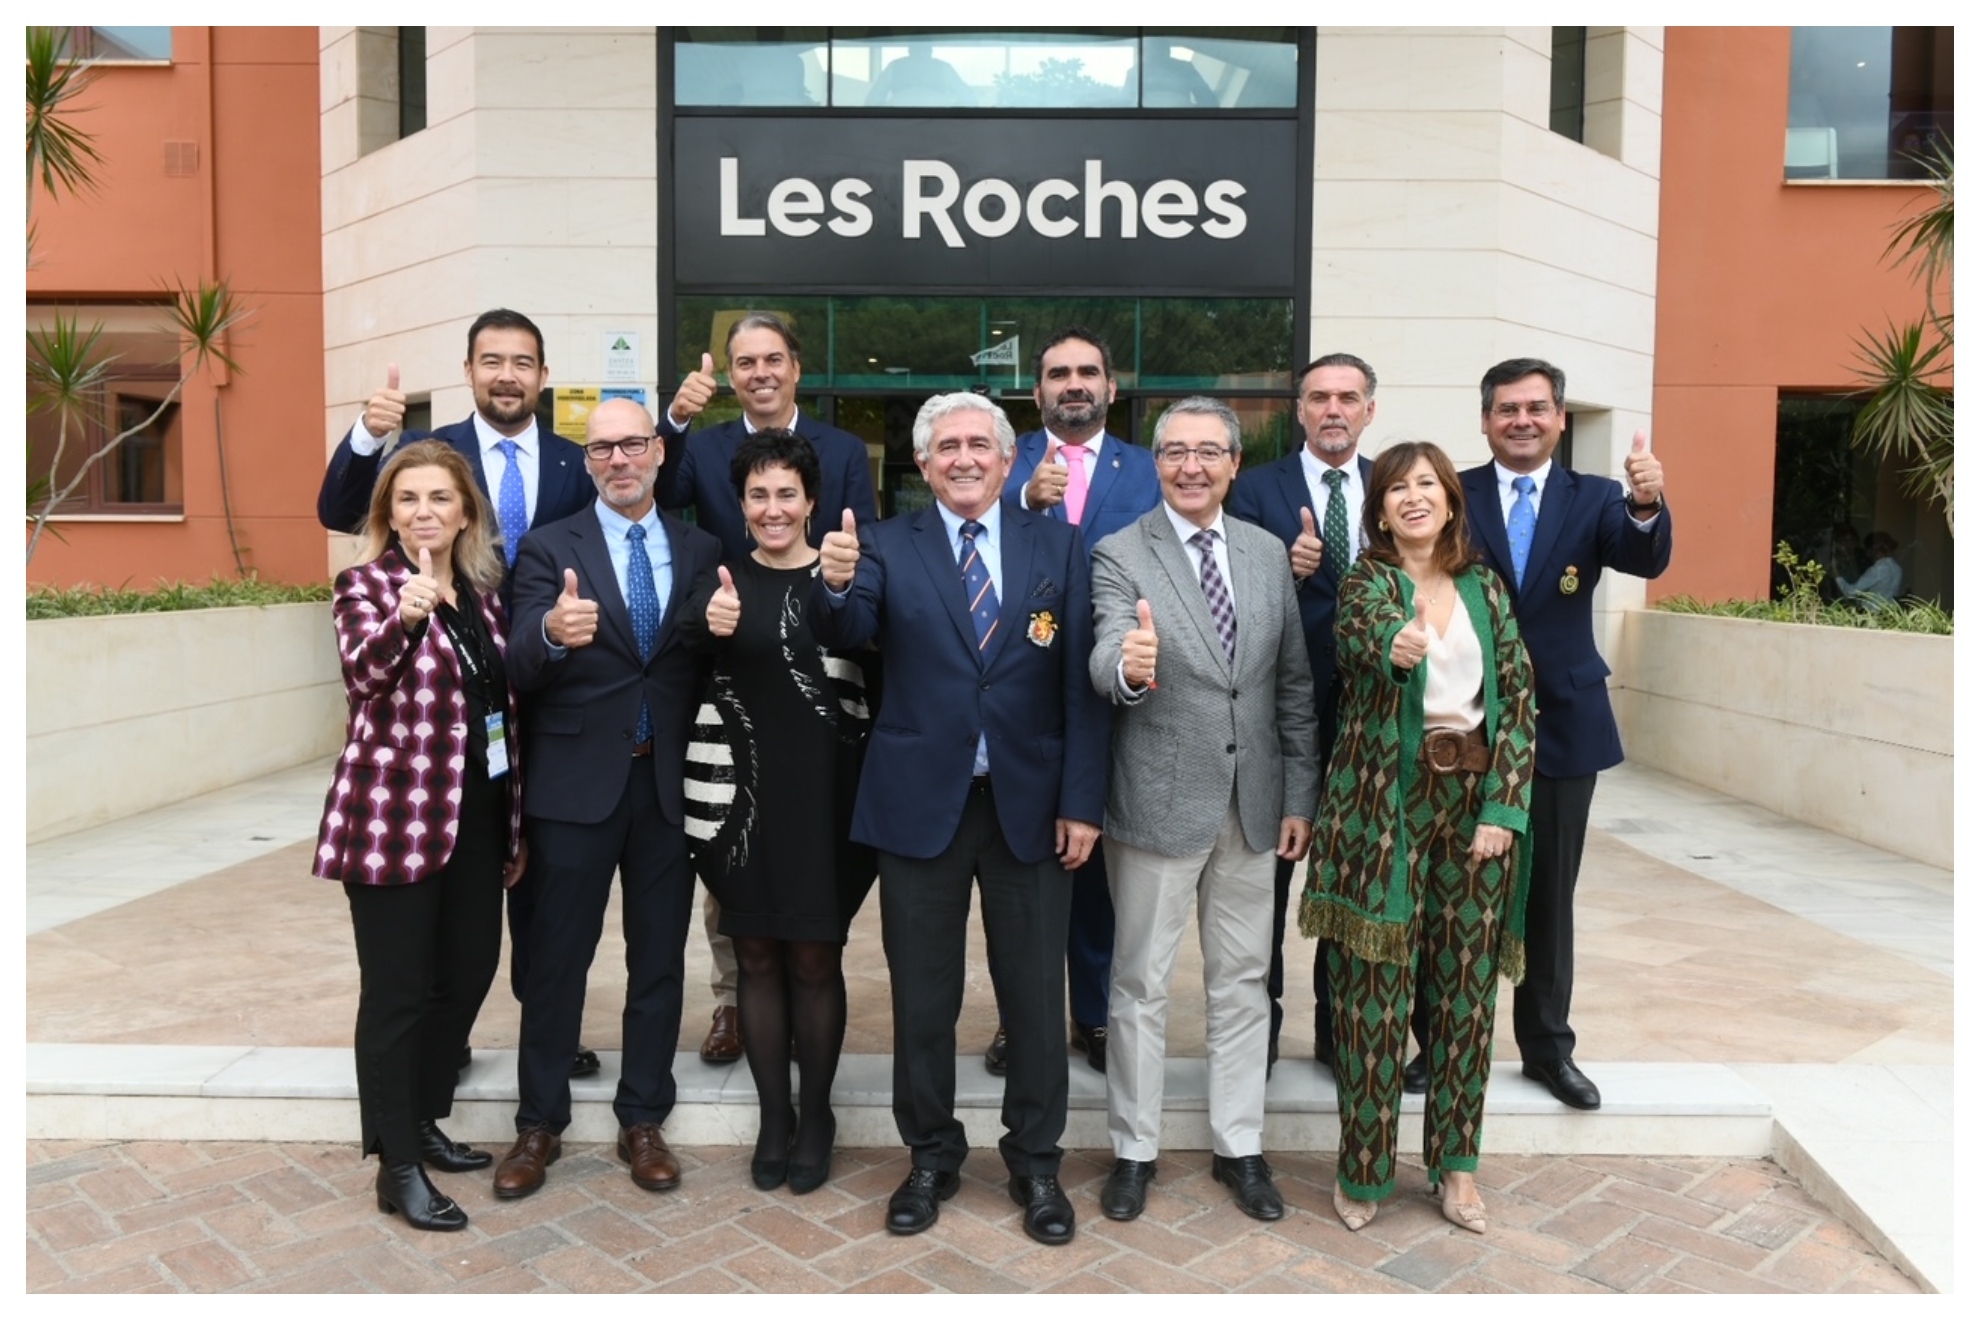 Foto de familia en el acto de presentación en Les Roches.